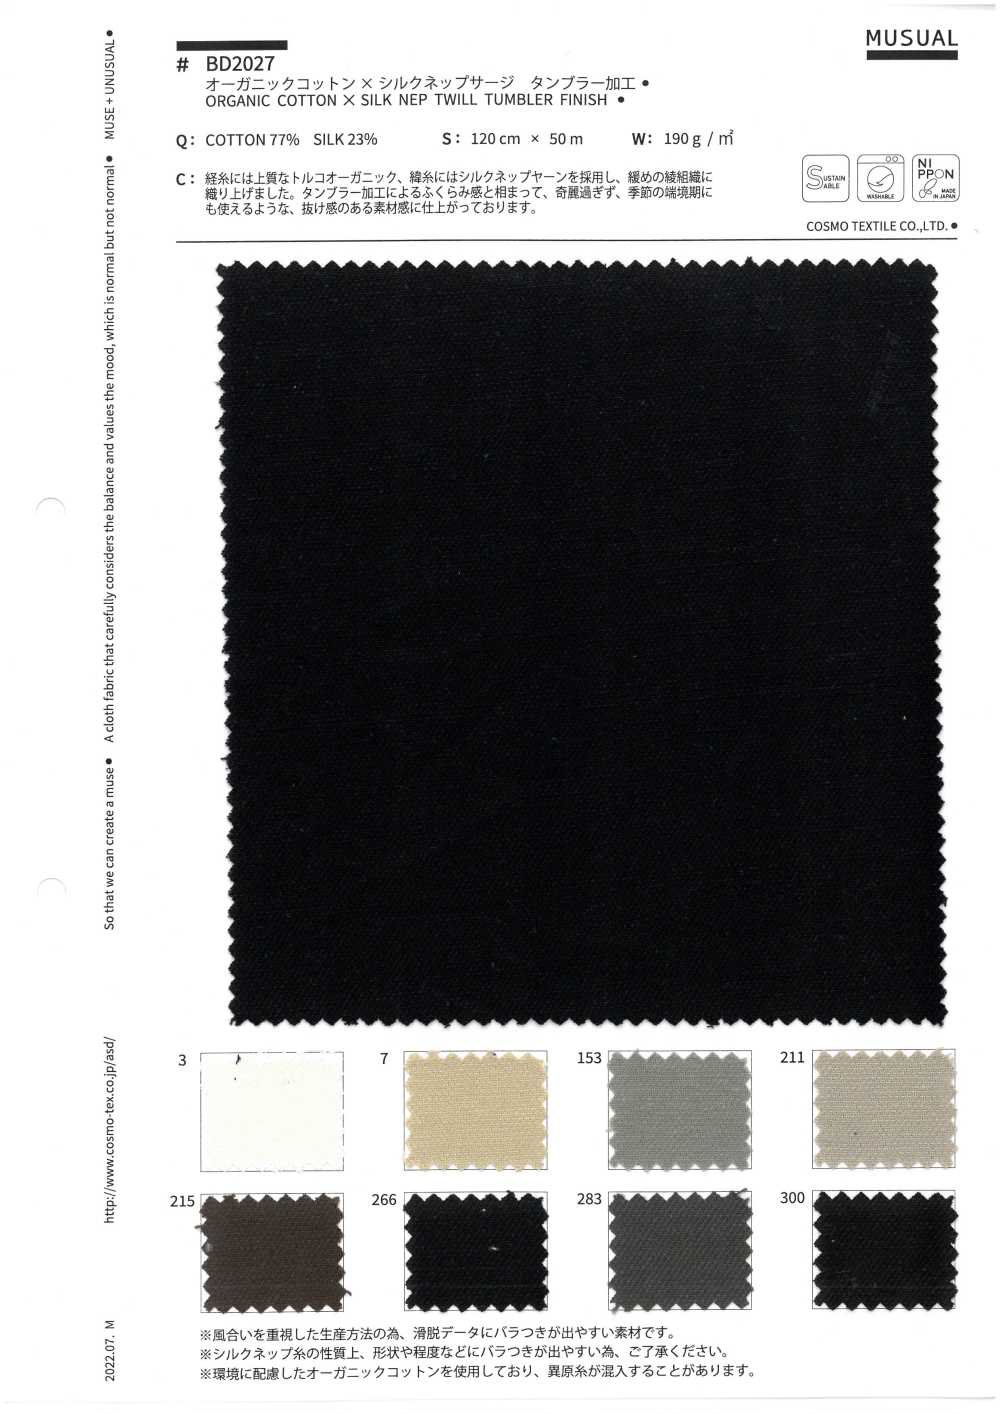 BD2027 Bio-Baumwolle/Seide Verarbeitung Von Serge Tunbler[Textilgewebe] COSMO TEXTILE